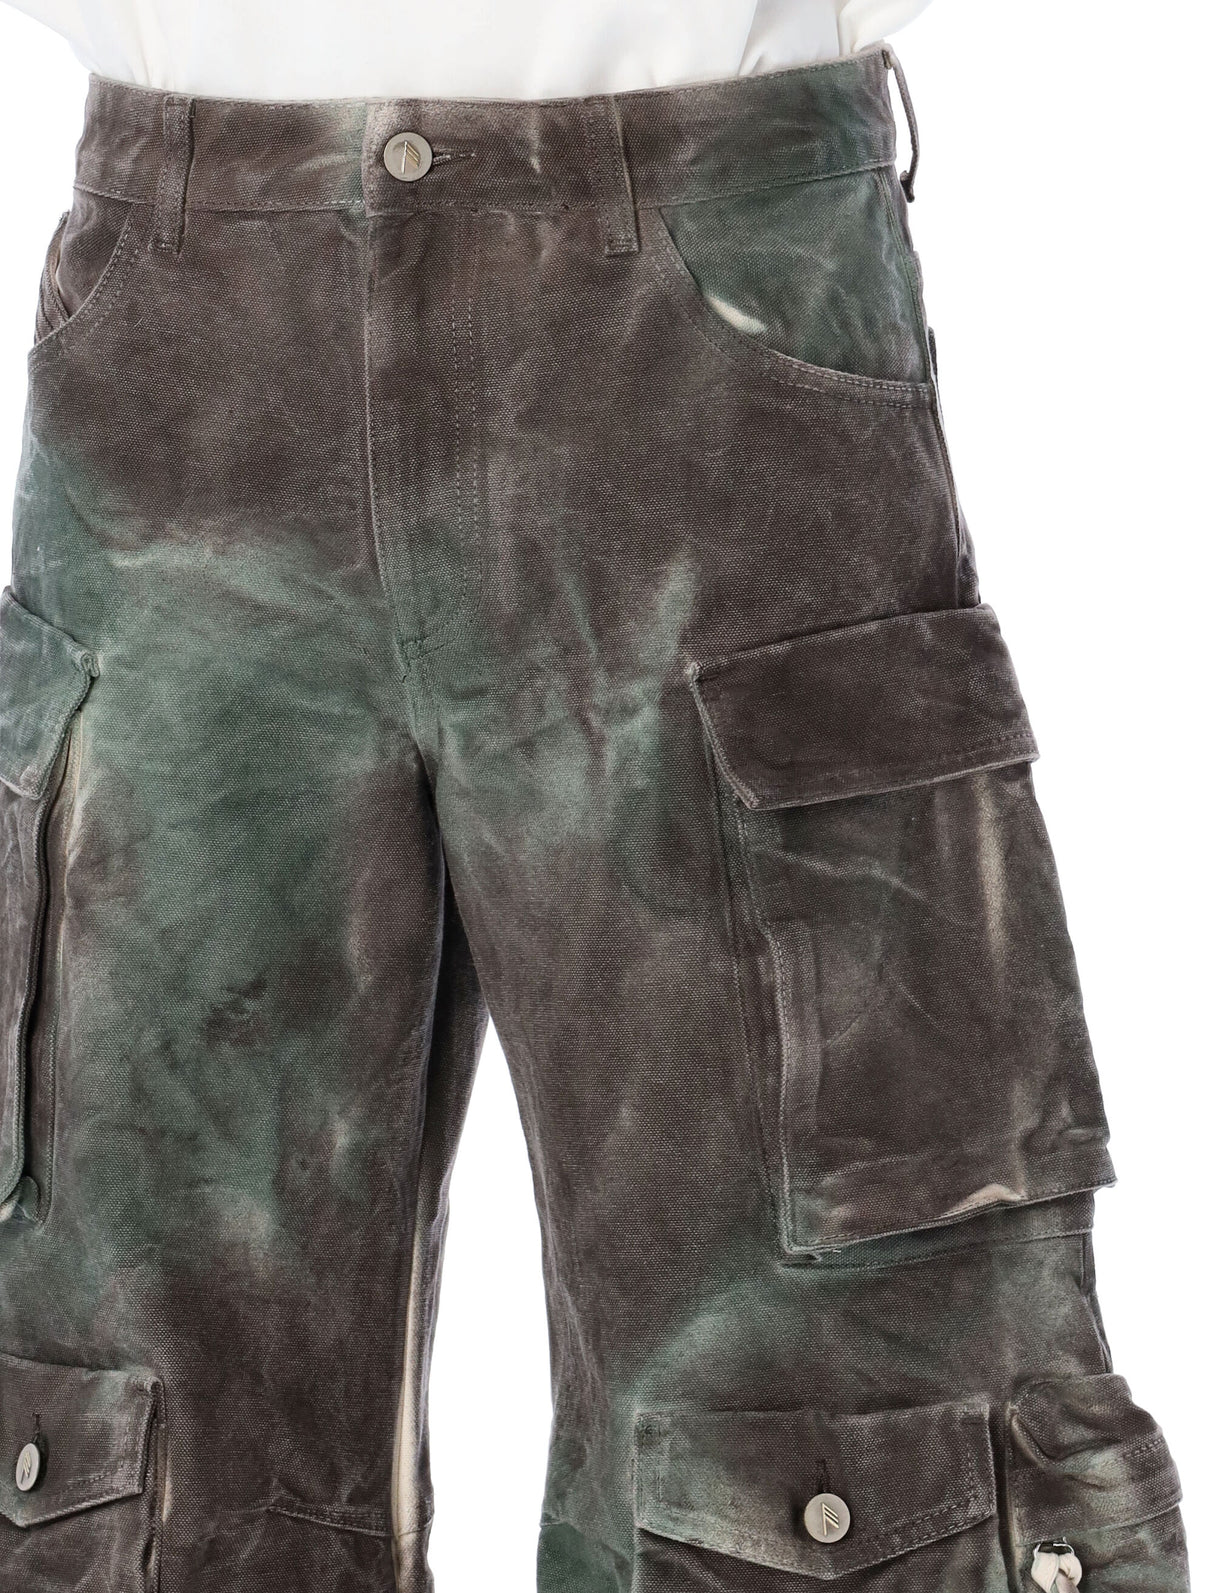 بنطلونات جينز بطبعة الكامو الخضراء مصبوغة مع جيوب بضغطة للنساء